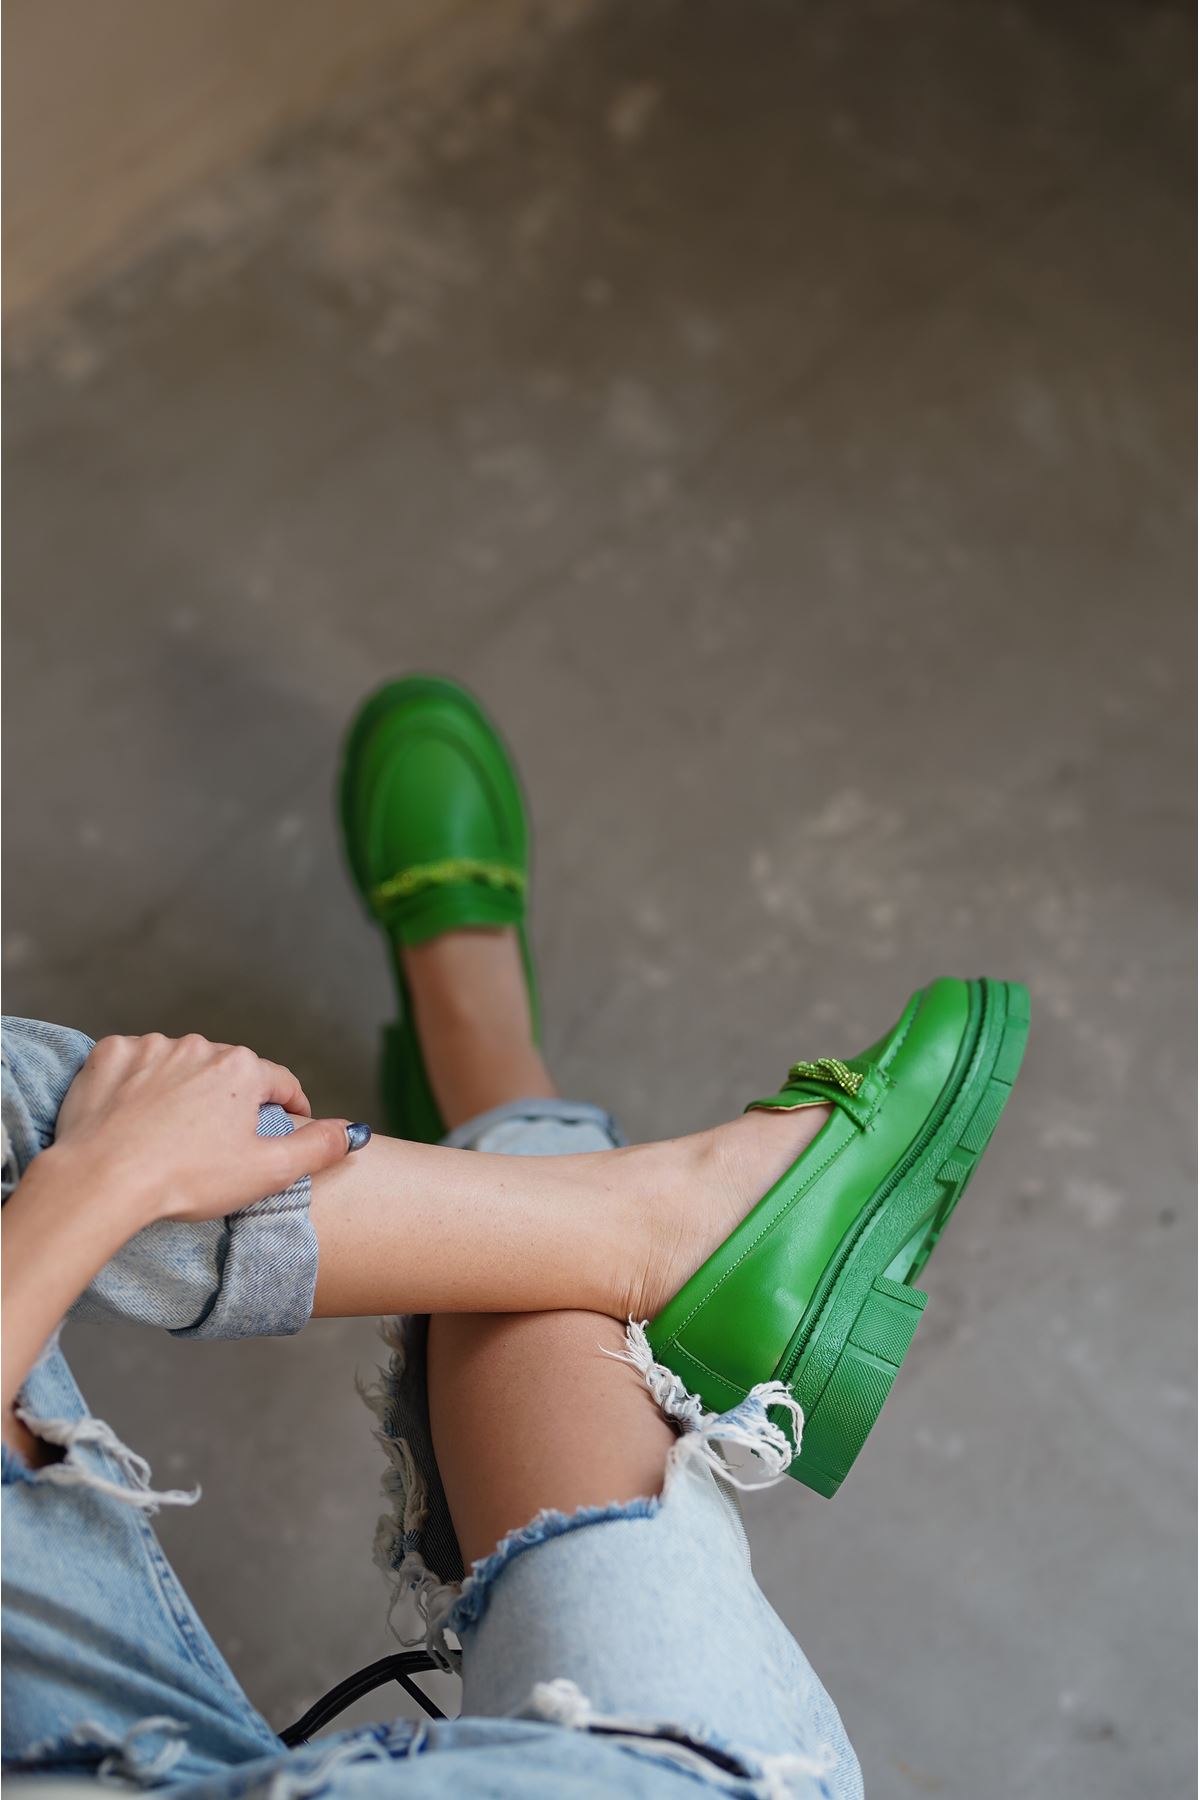 Kadın Diamond Taş Detaylı Günlük Ayakkabı - Yeşil Deri